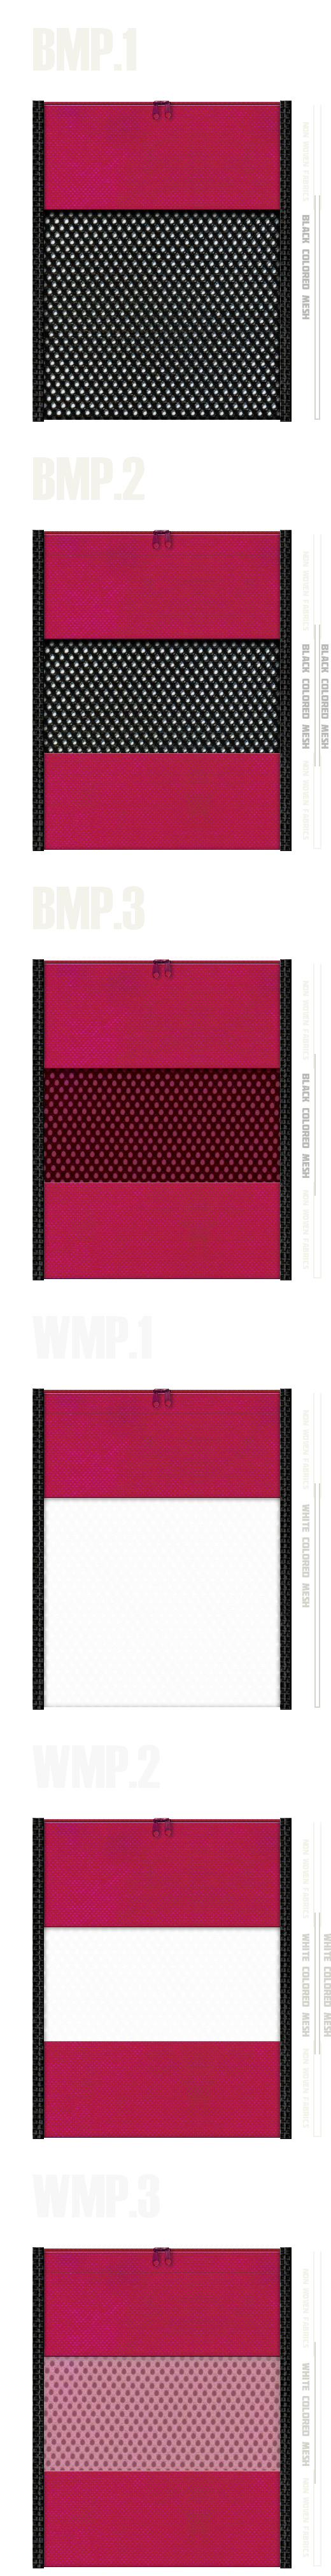 メッシュポーチのカラーシミュレーション：黒色・白色メッシュと濃ピンク色不織布の組み合わせ